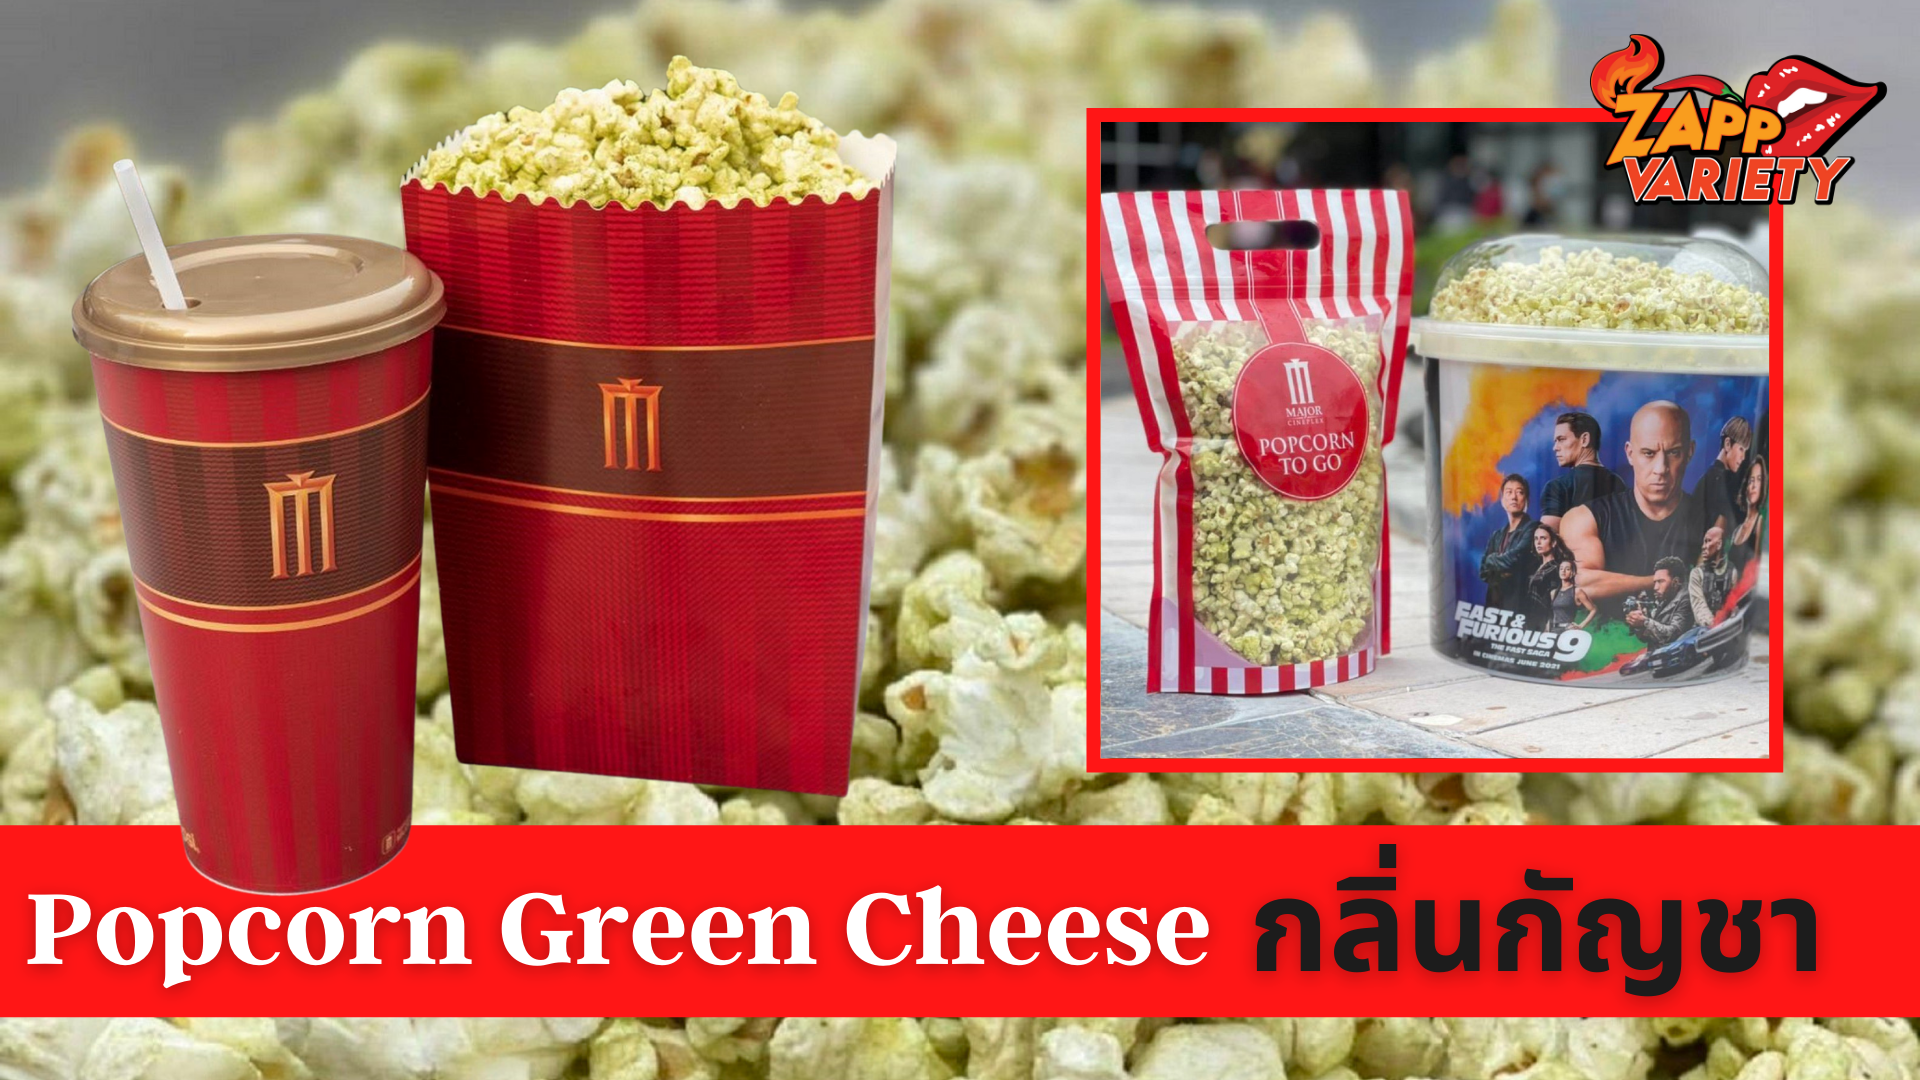 เมเจอร์ ซีนีเพล็กซ์ กรุ้ป แนะนำป๊อปคอร์นรสชาติใหม่ “Popcorn Green Cheese” อร่อย อารมณ์ดี สดชื่น ผ่อนคลาย ผสมสารสกัดกลิ่นหอมแบบกัญชา